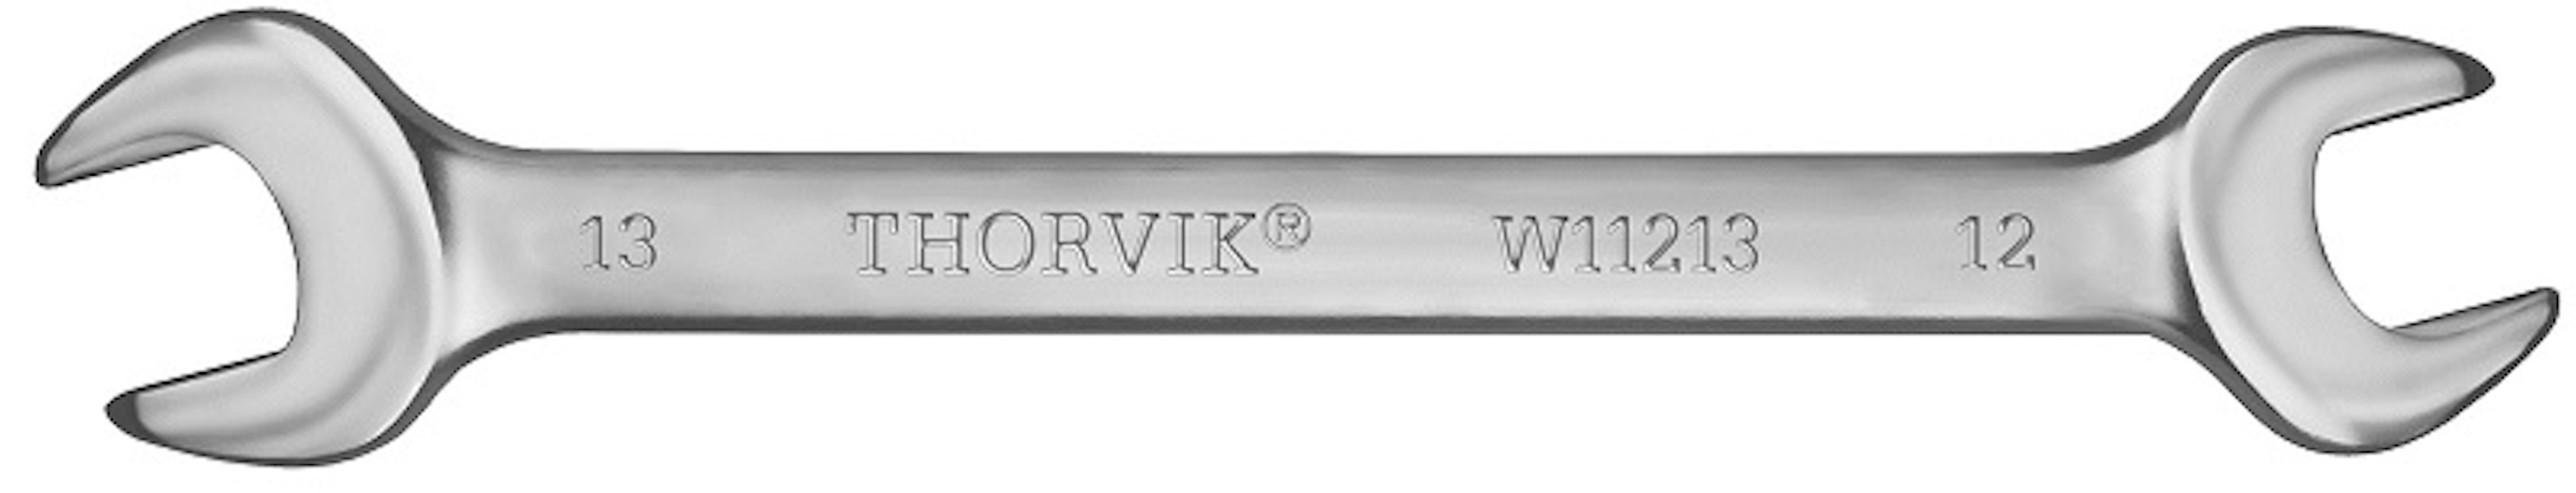 THORVIK W12123 Ключ гаечный рожковый серии ARC, 21х23 мм thorvik oew0607 ключ гаечный рожковый 6x7 мм